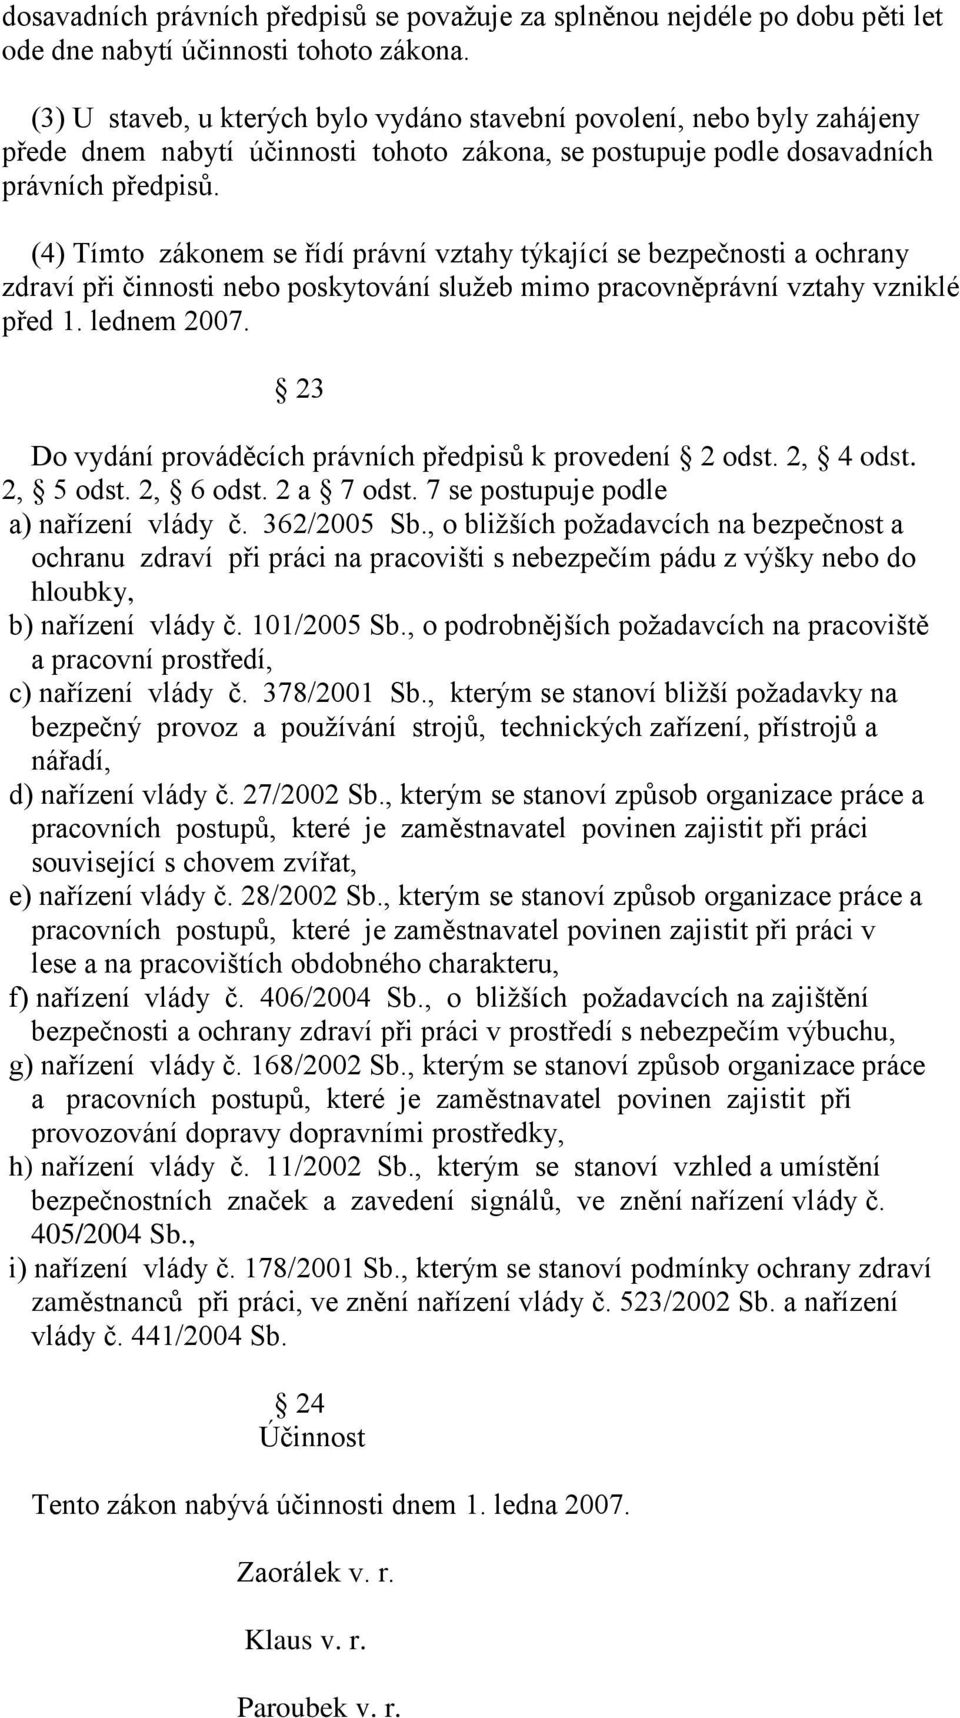 (4) Tímto zákonem se řídí právní vztahy týkající se bezpečnosti a ochrany zdraví při činnosti nebo poskytování sluţeb mimo pracovněprávní vztahy vzniklé před 1. lednem 2007.